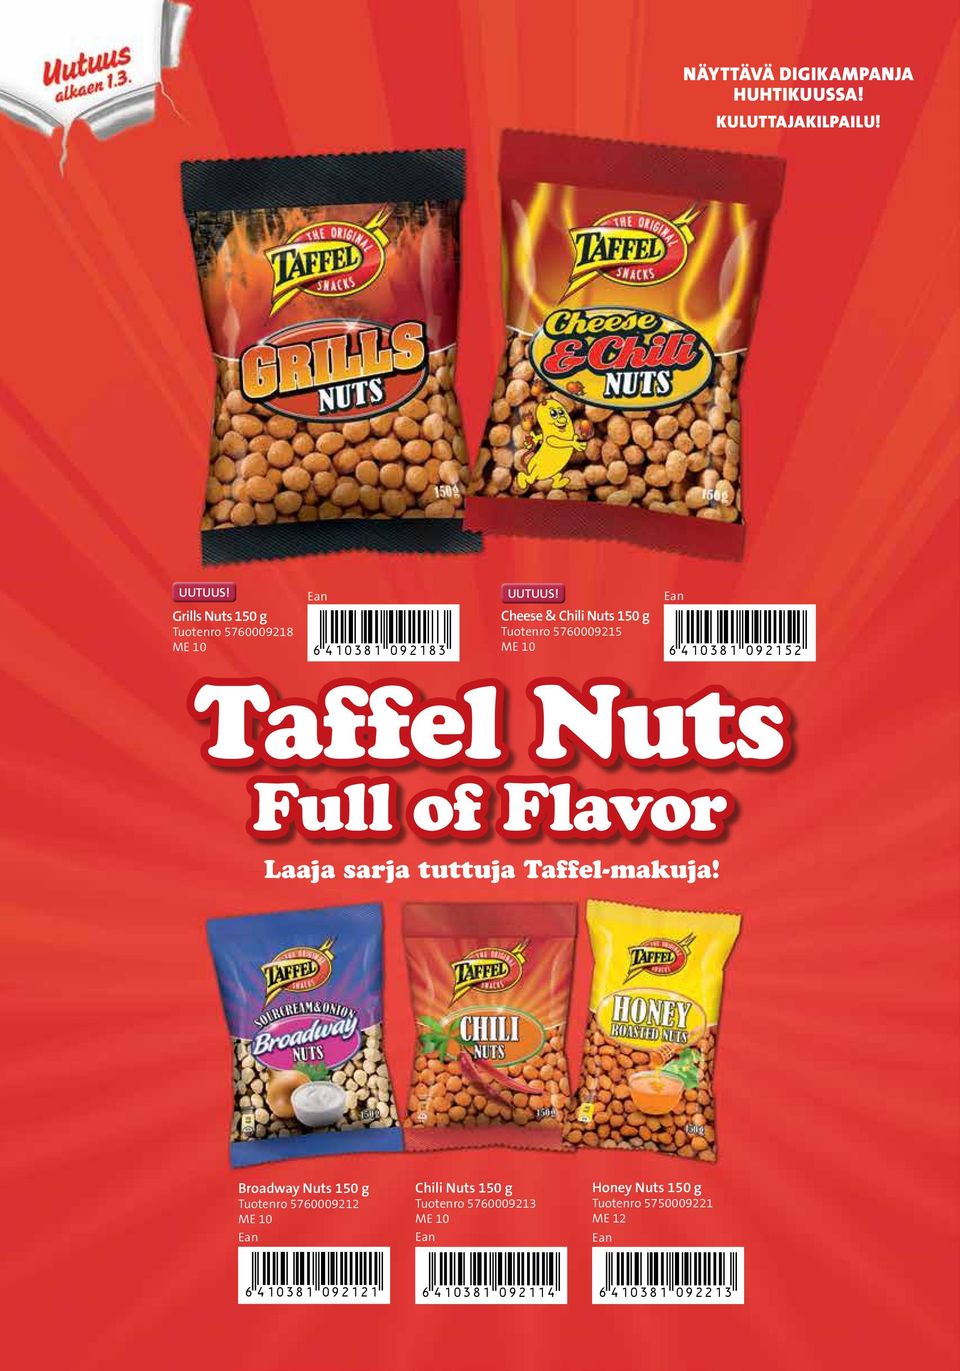 5760009215 *6410381092152* Taffel Nuts Full of Flavor Laaja sarja tuttuja Taffel-makuja!